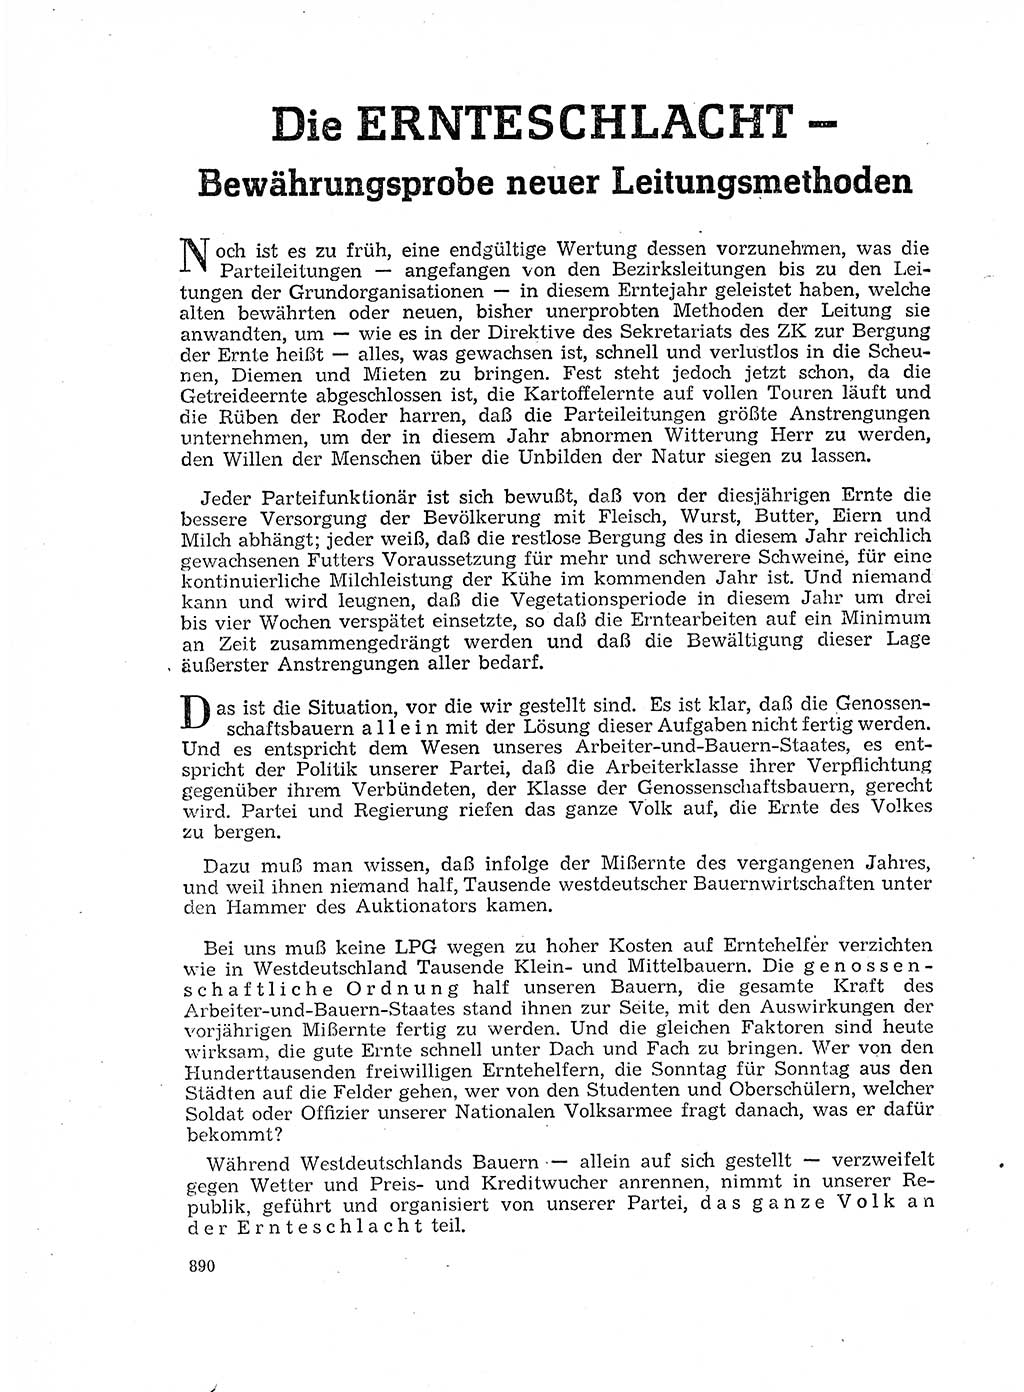 Neuer Weg (NW), Organ des Zentralkomitees (ZK) der SED (Sozialistische Einheitspartei Deutschlands) für Fragen des Parteilebens, 17. Jahrgang [Deutsche Demokratische Republik (DDR)] 1962, Seite 890 (NW ZK SED DDR 1962, S. 890)